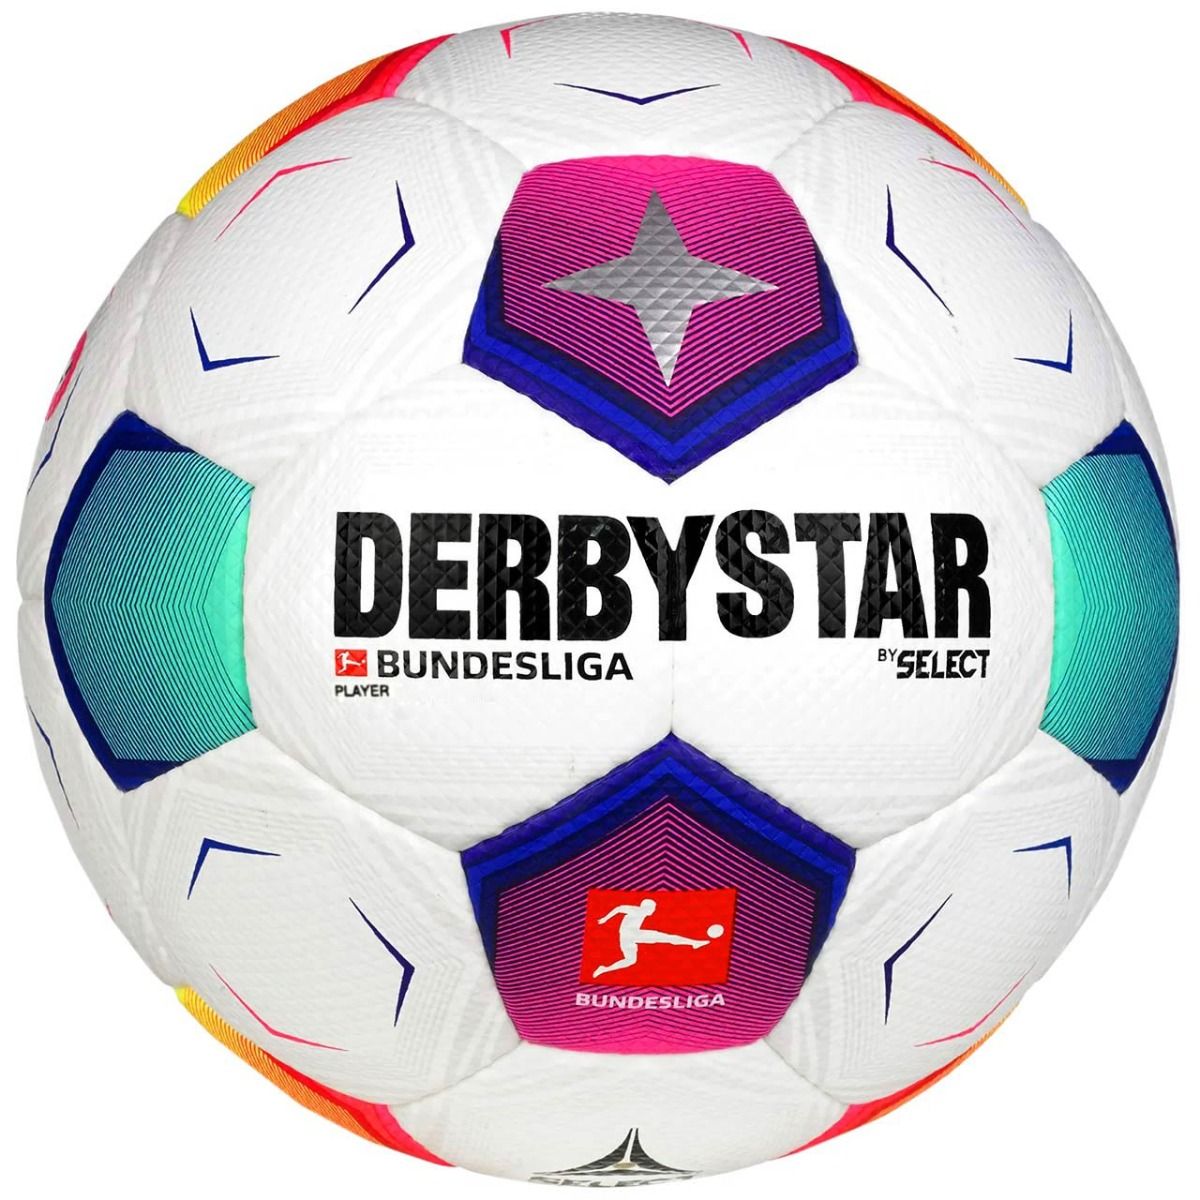 Select Minge de fotbal Derbystar Bundesliga Player v23 18178